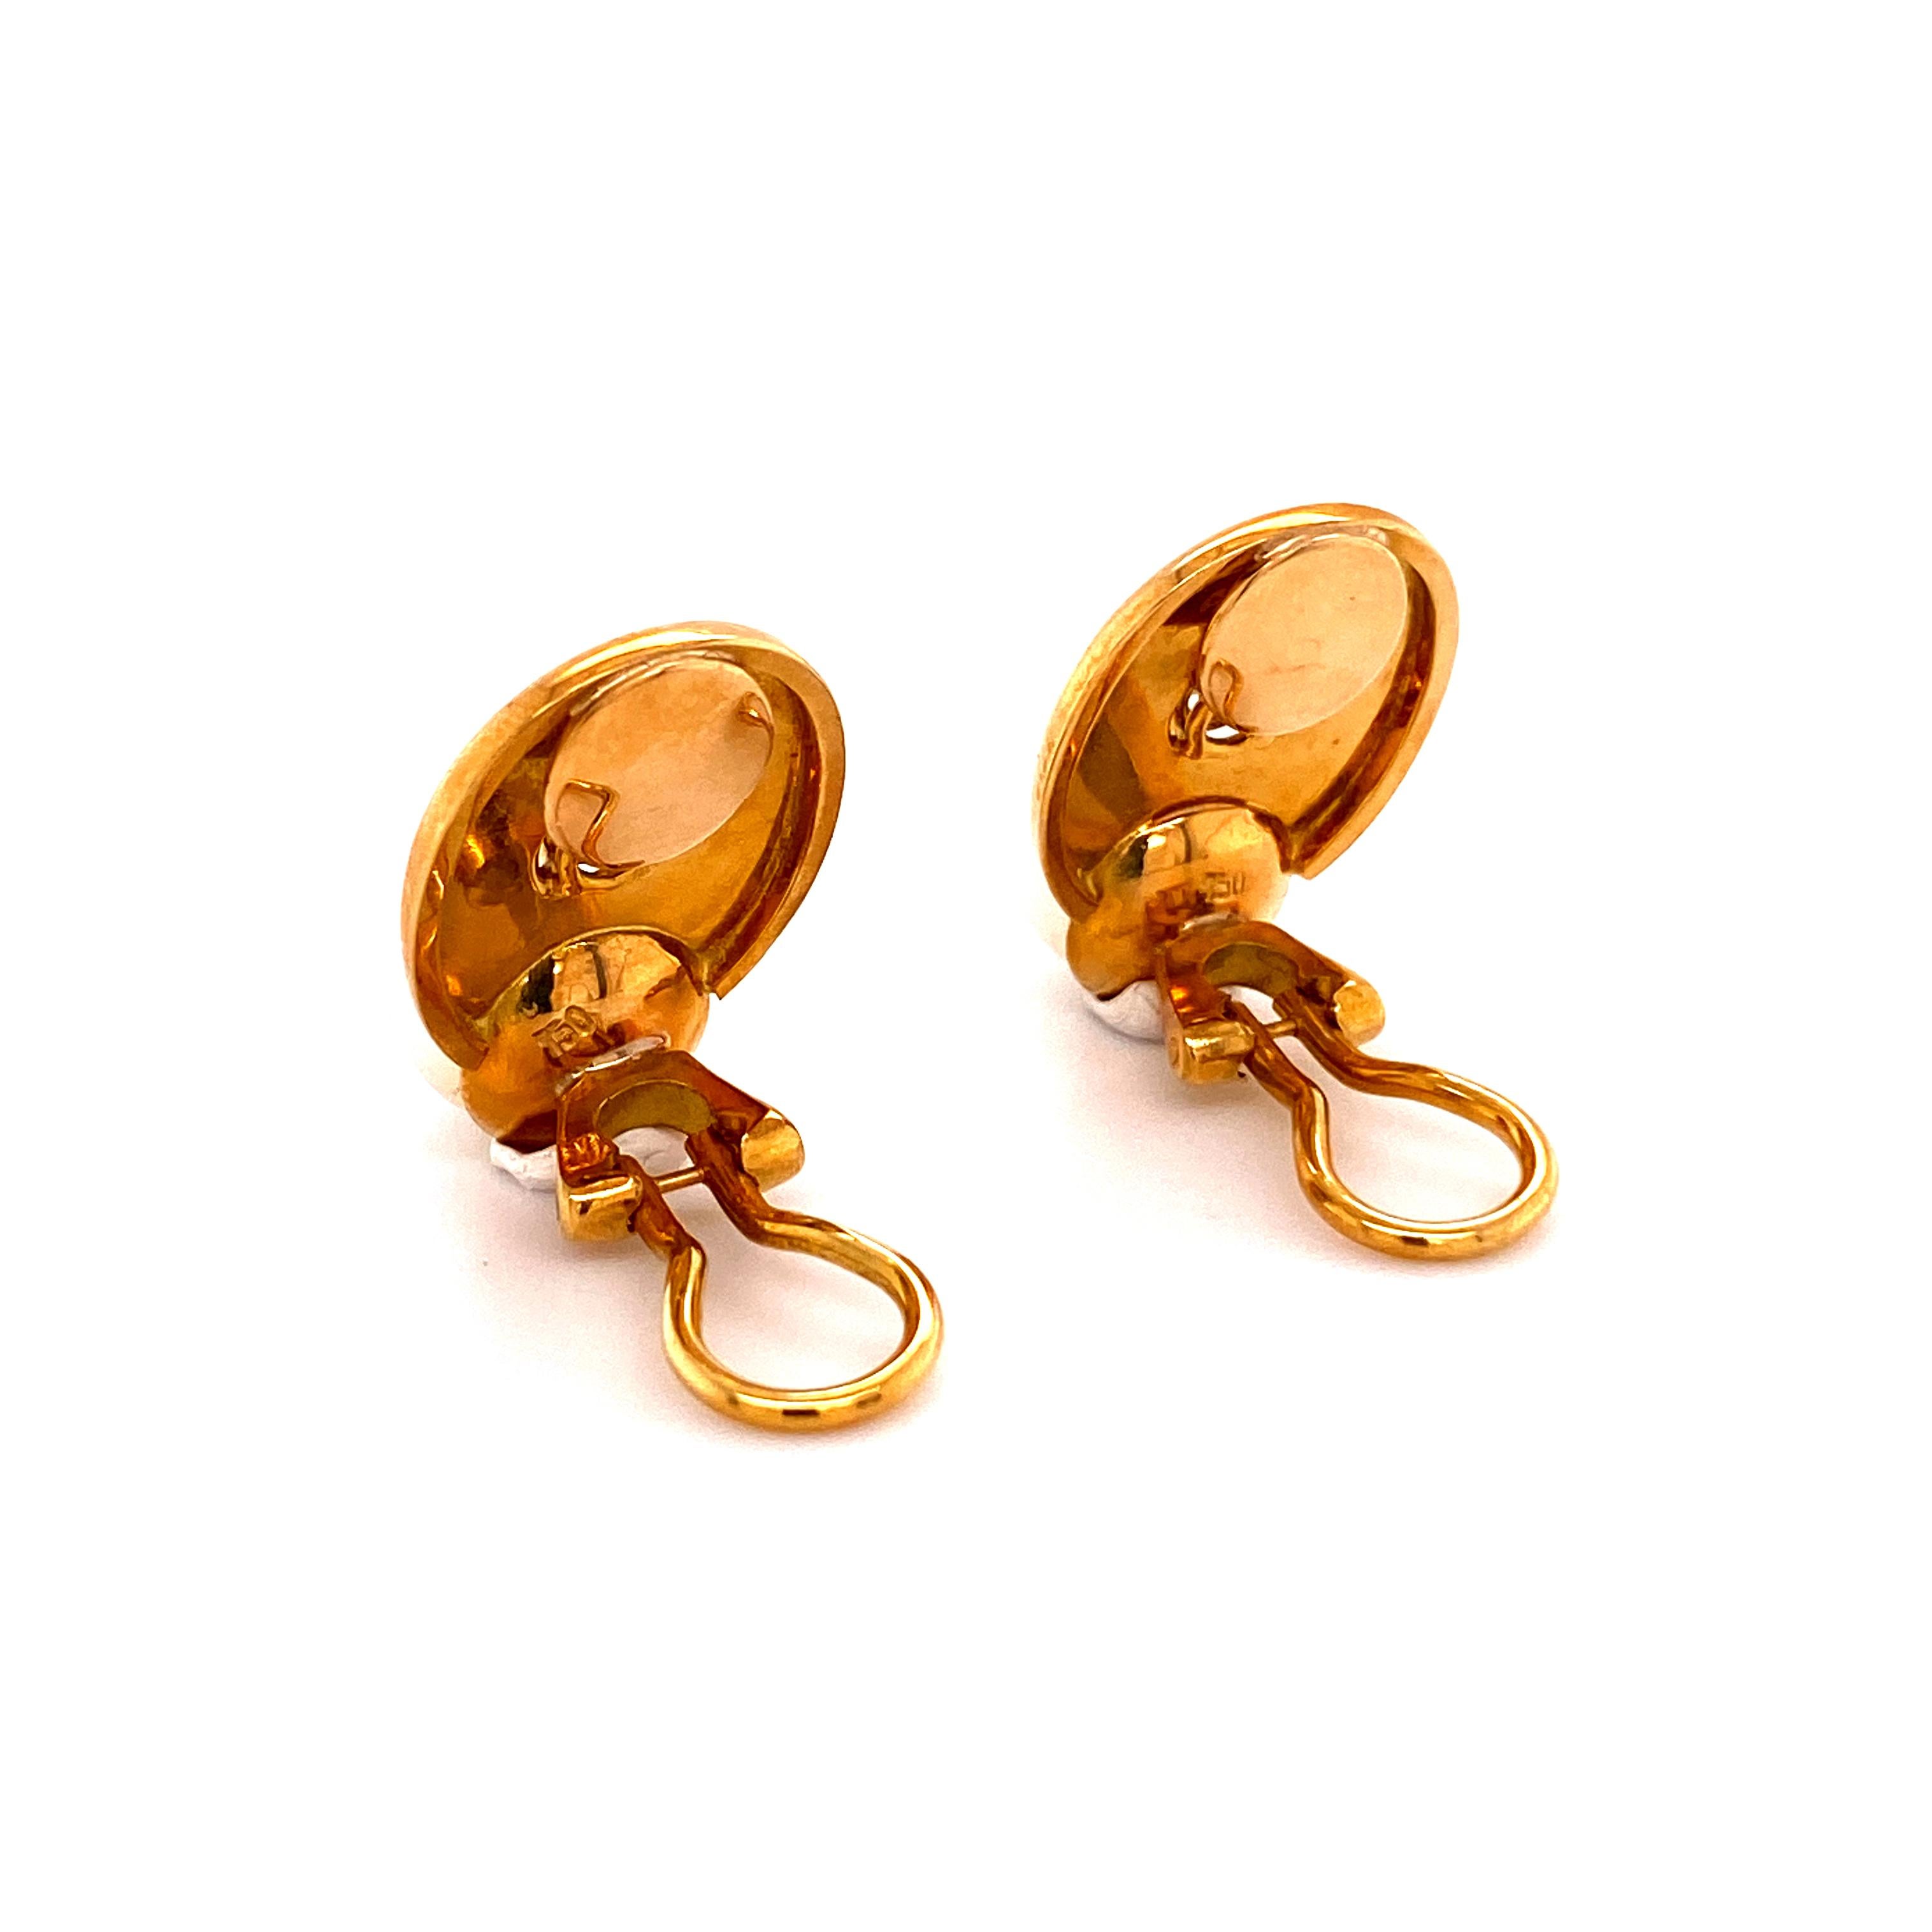 Modern Akoya Pearl Earrings with Diamonds in Yellow Gold 750